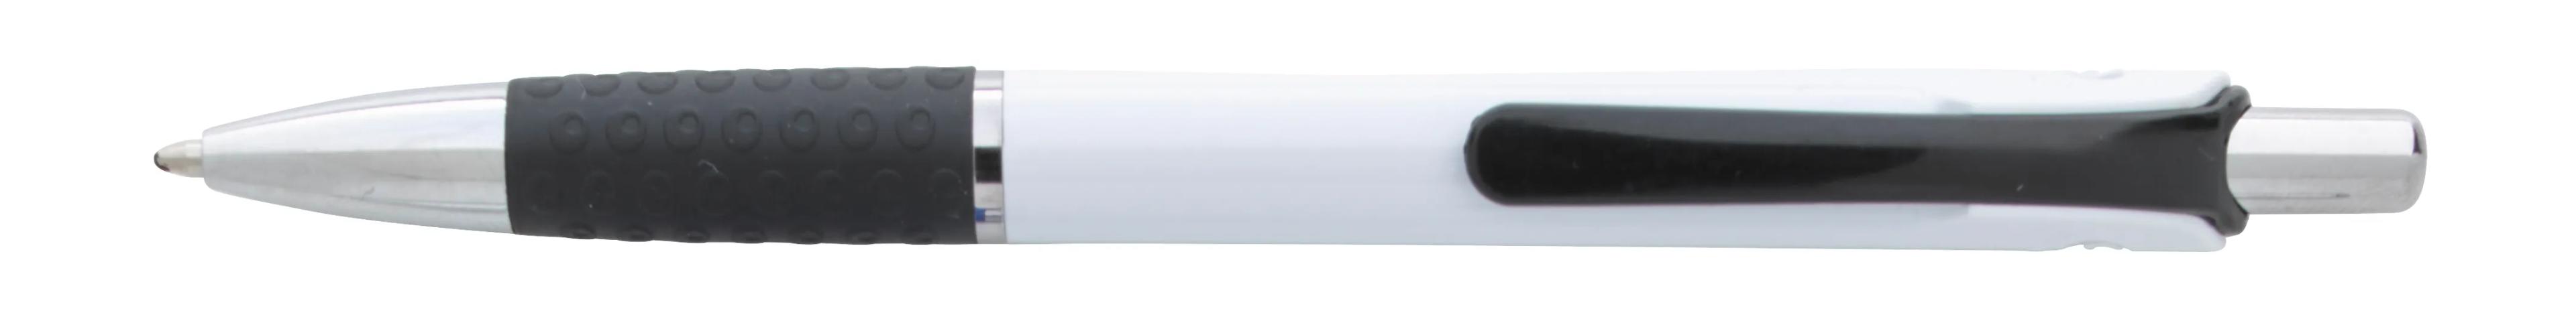 Souvenir® Image Grip Pen 10 of 50